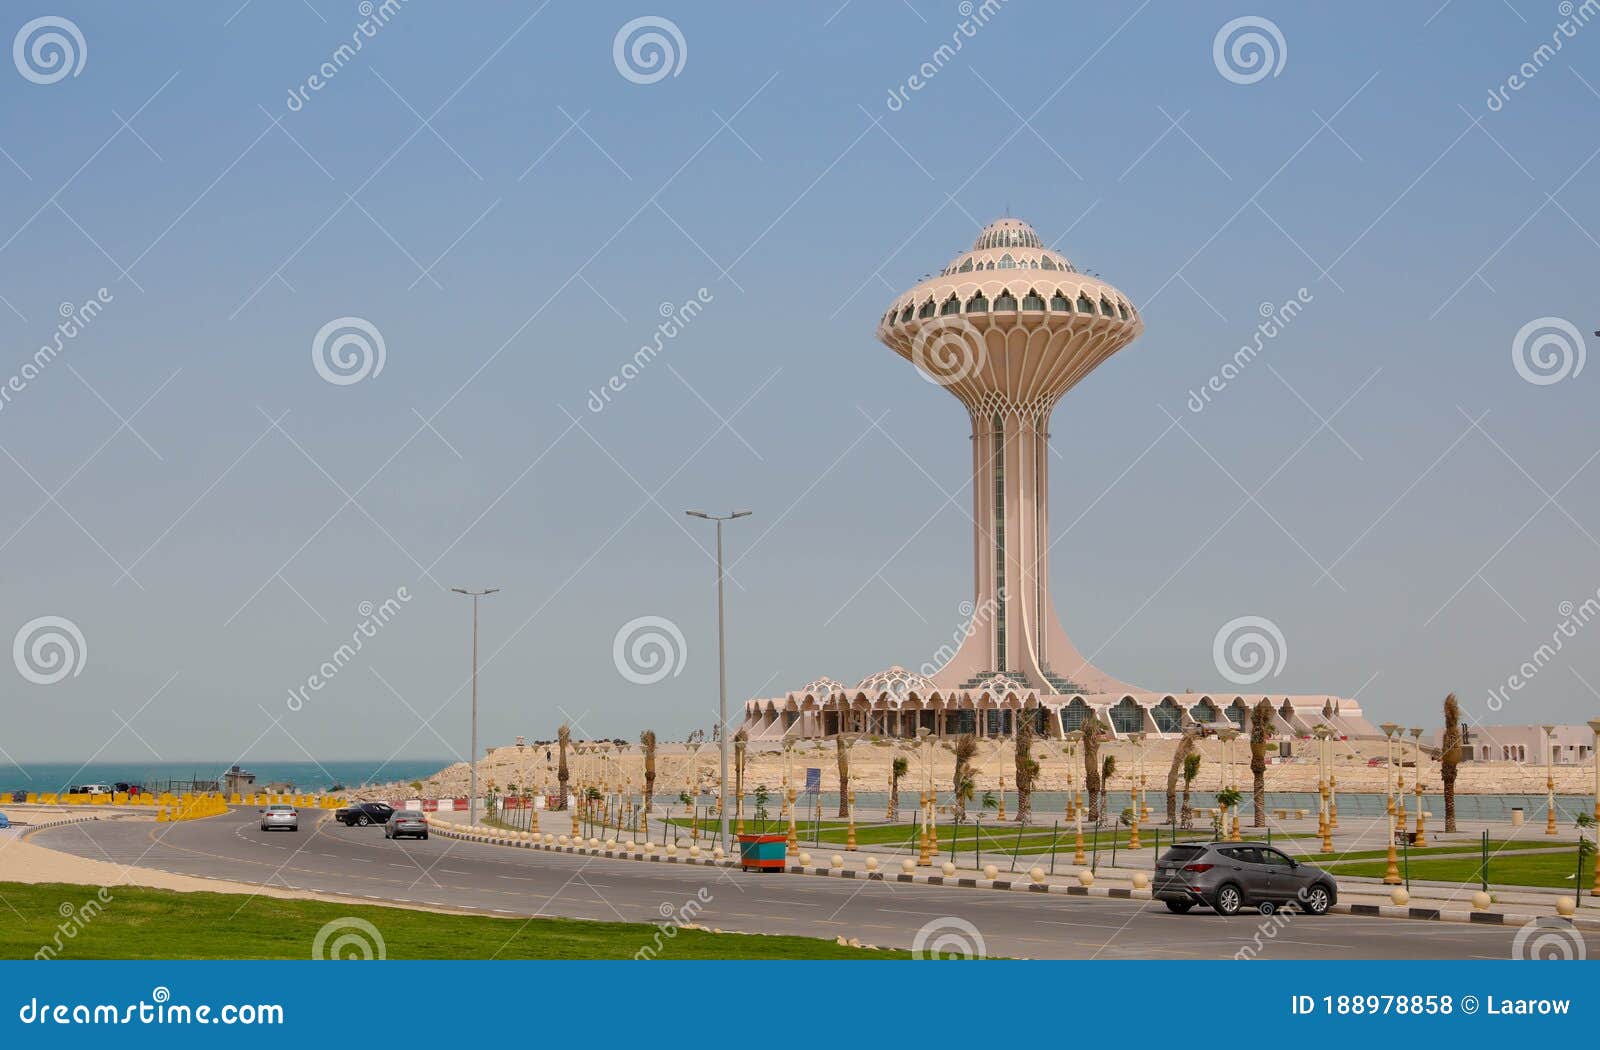 dammam . ksa , saudi arabia view in dammam , dammam , saudi arabia dammam tower